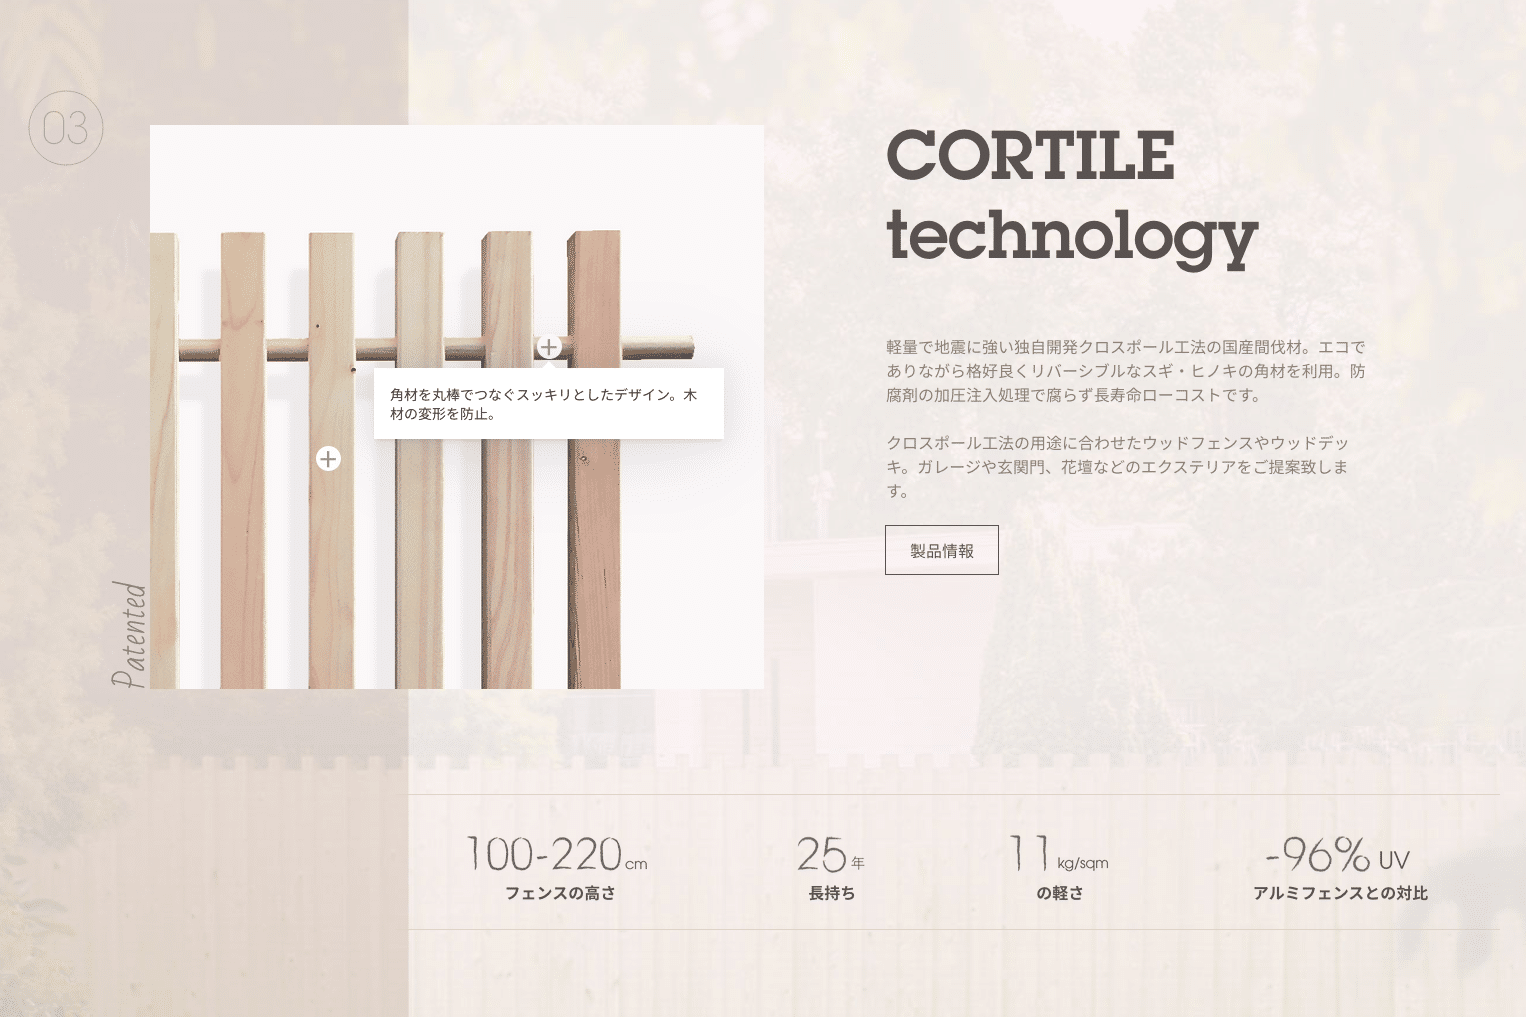 Cortile.jp